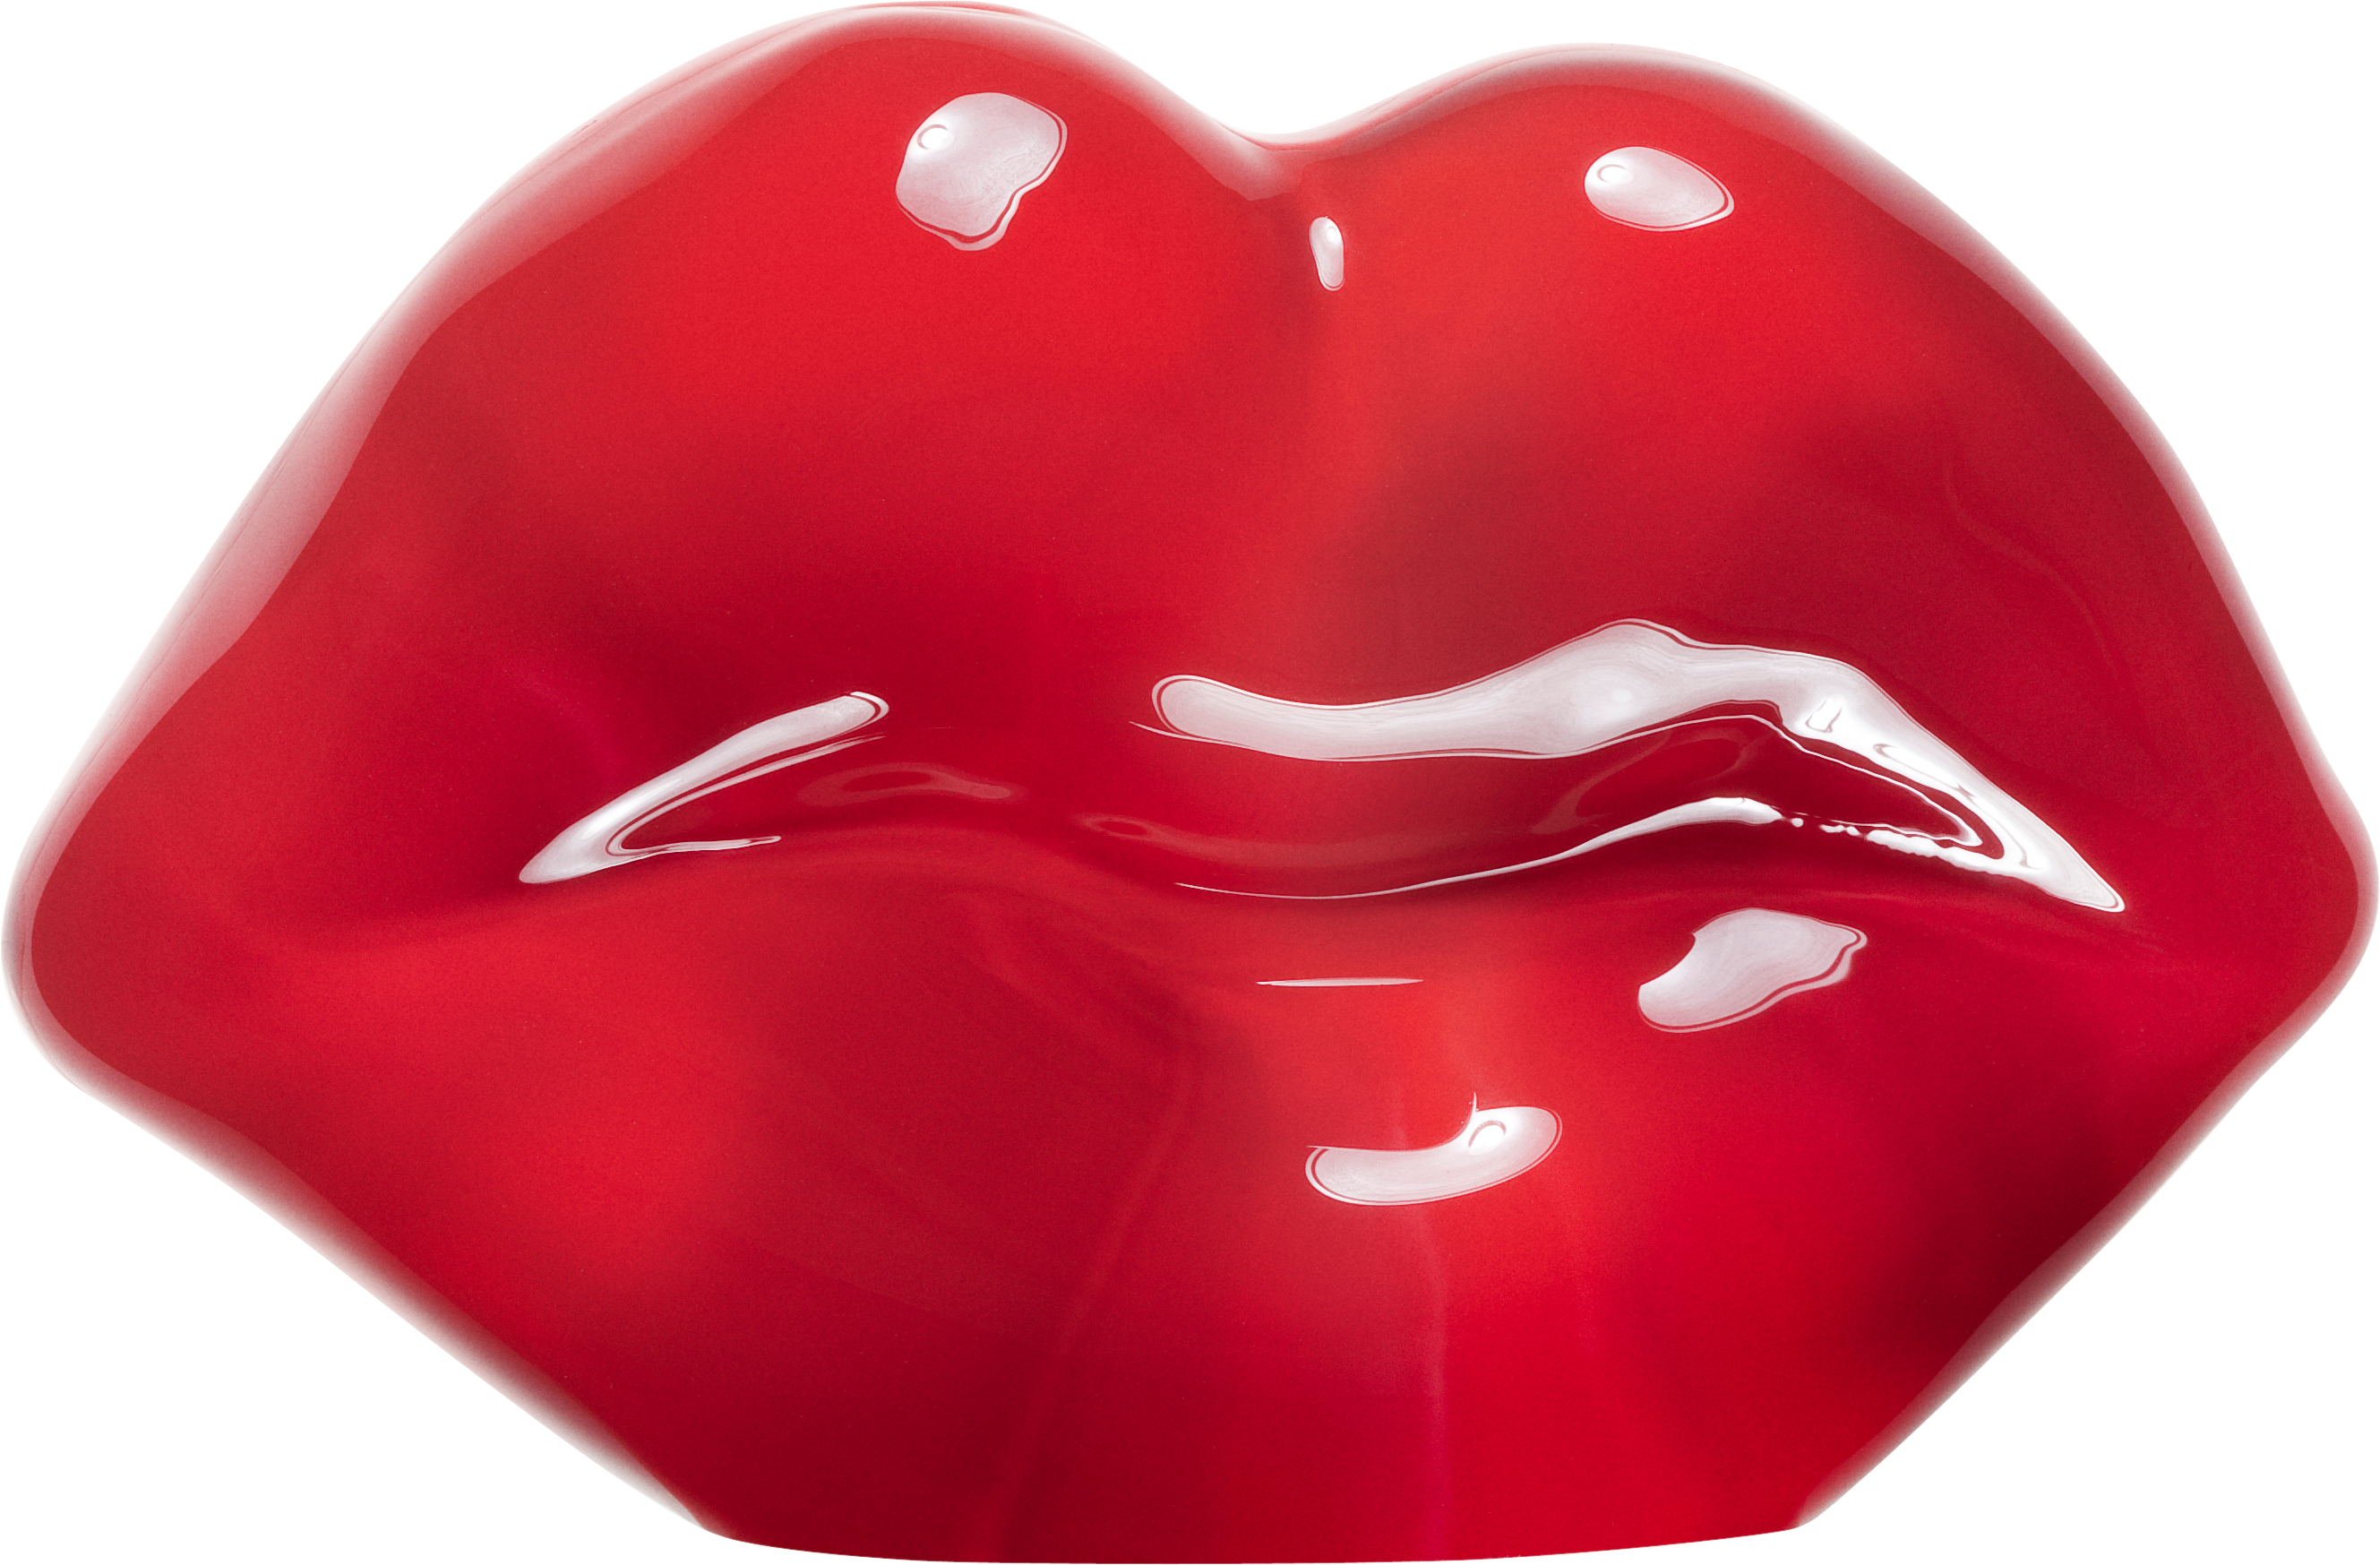 Lèvres rouges